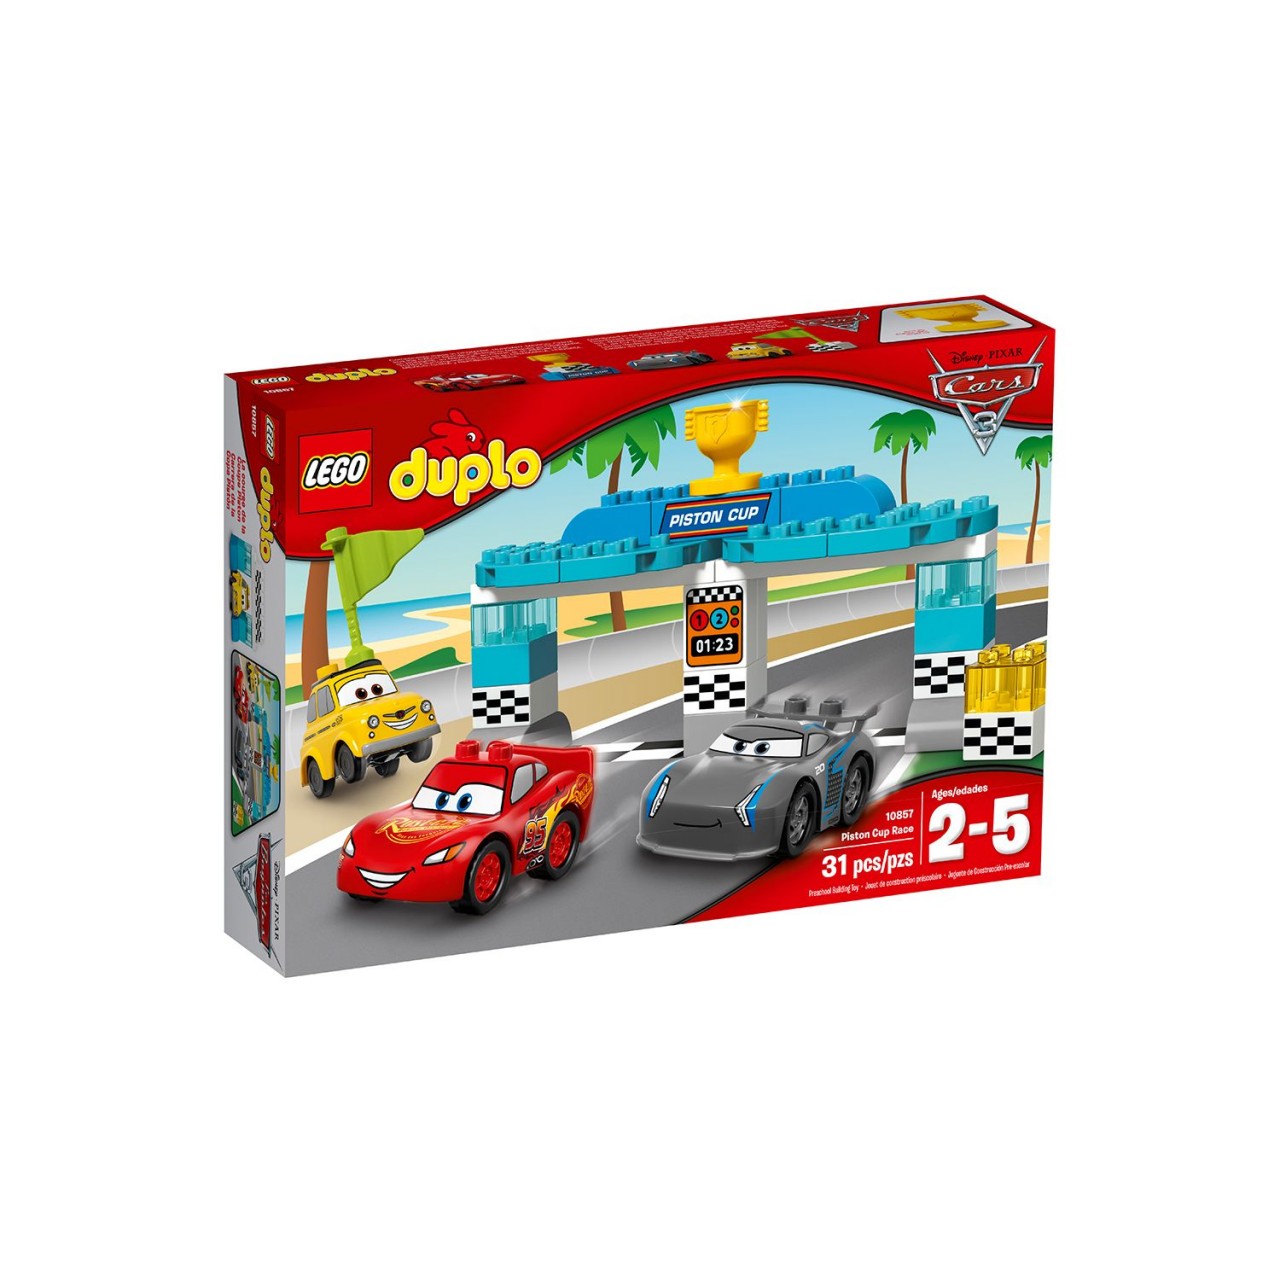 LEGO DUPLO 10857 Piston-Cup-Rennen